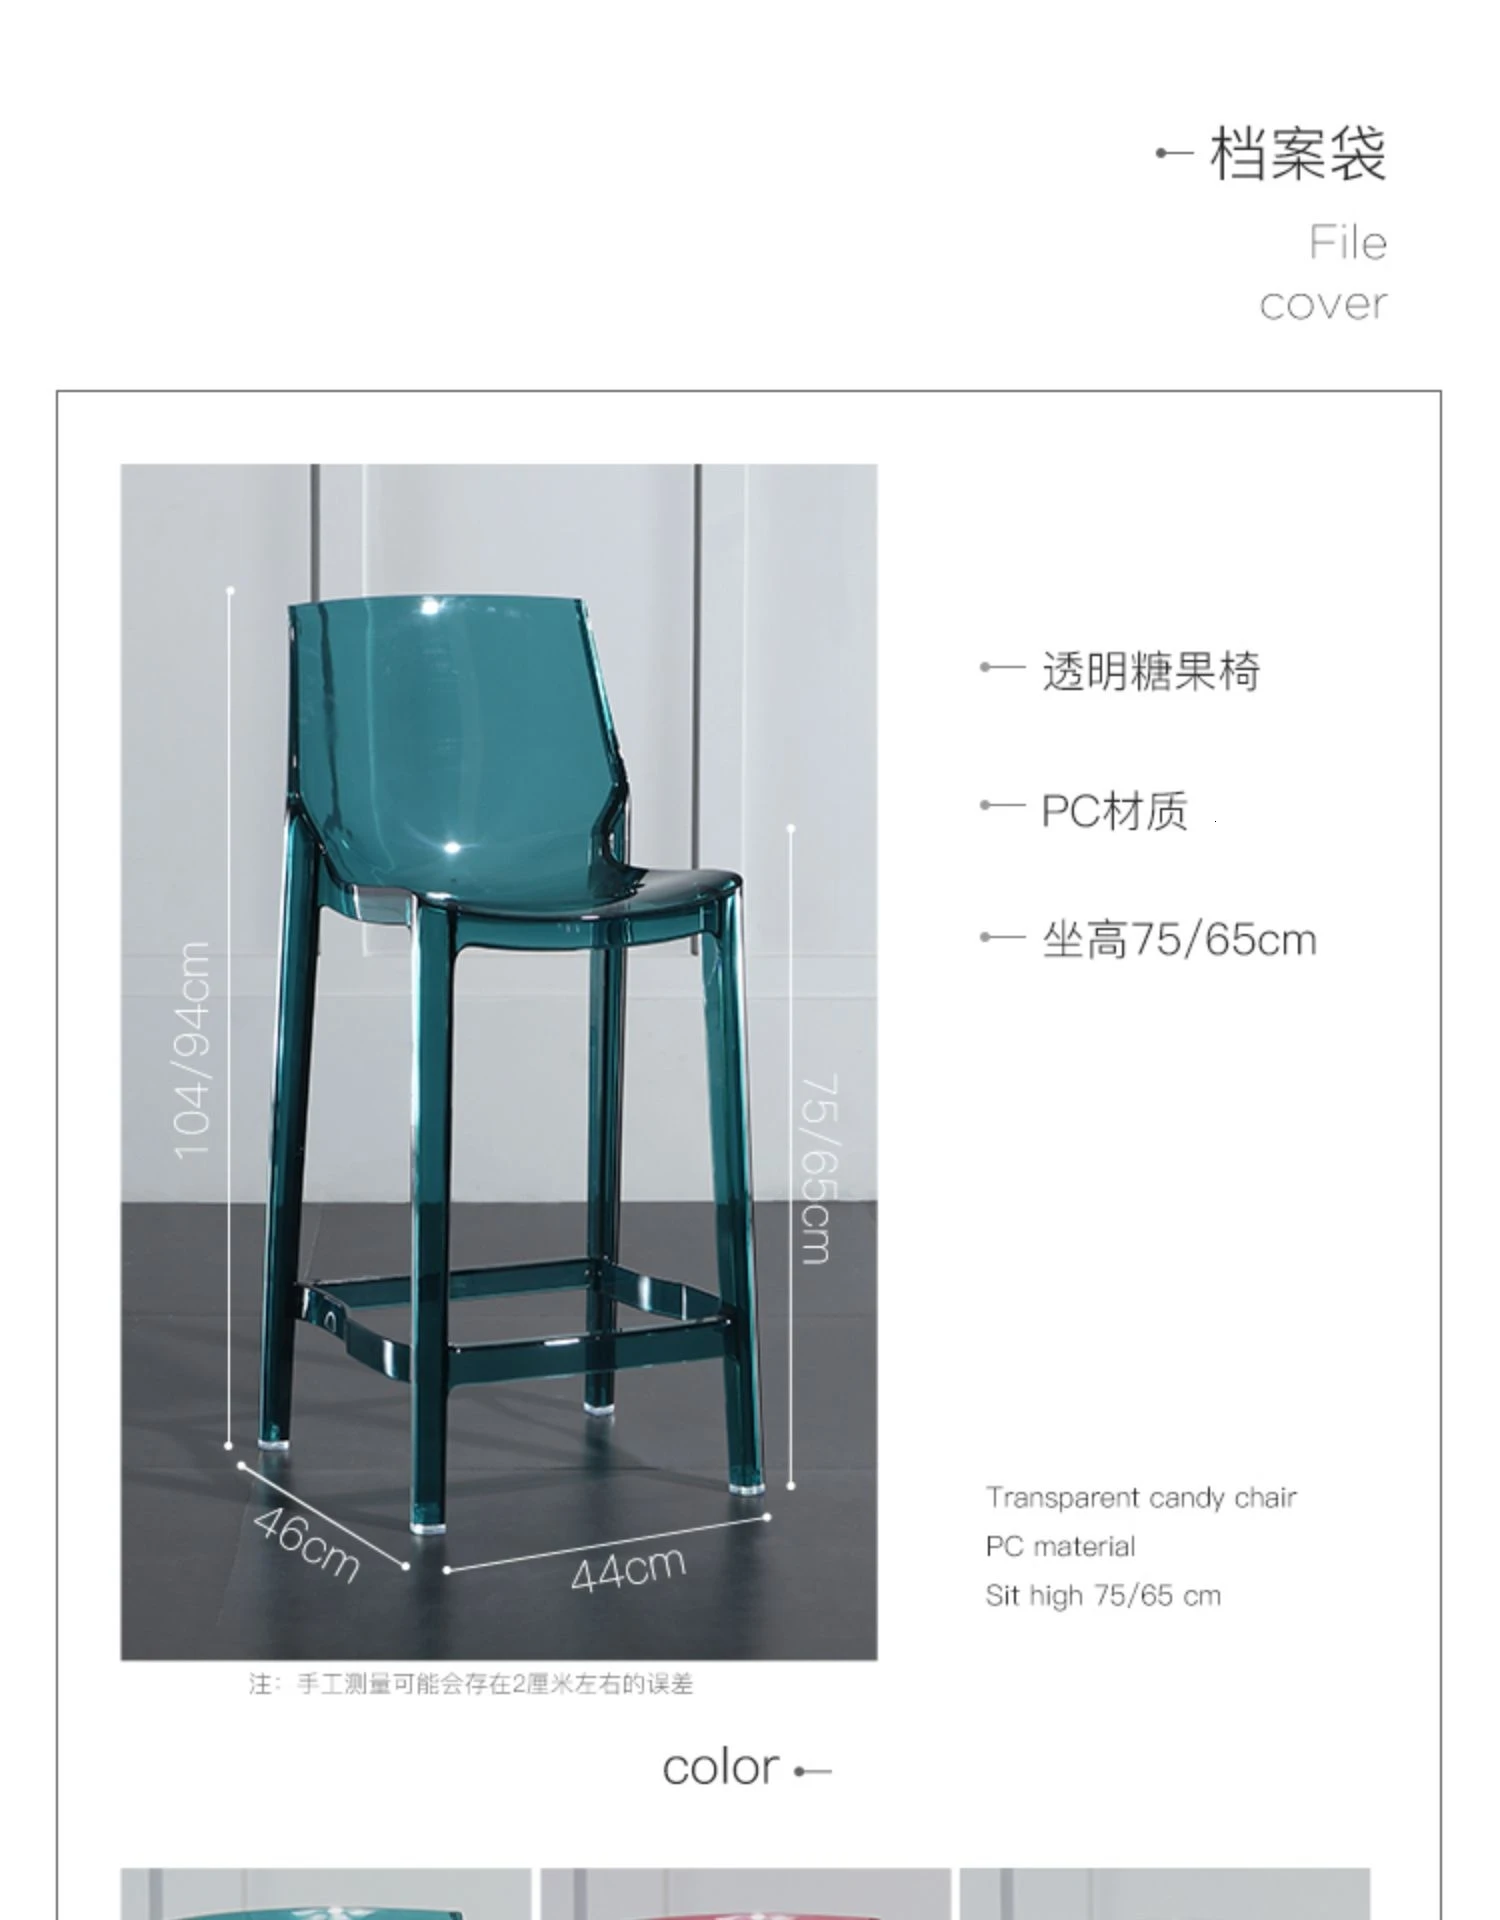 Прозрачный стержень стул барный стул скандинавский высокий стул акриловый высокий стул высокий барный стул